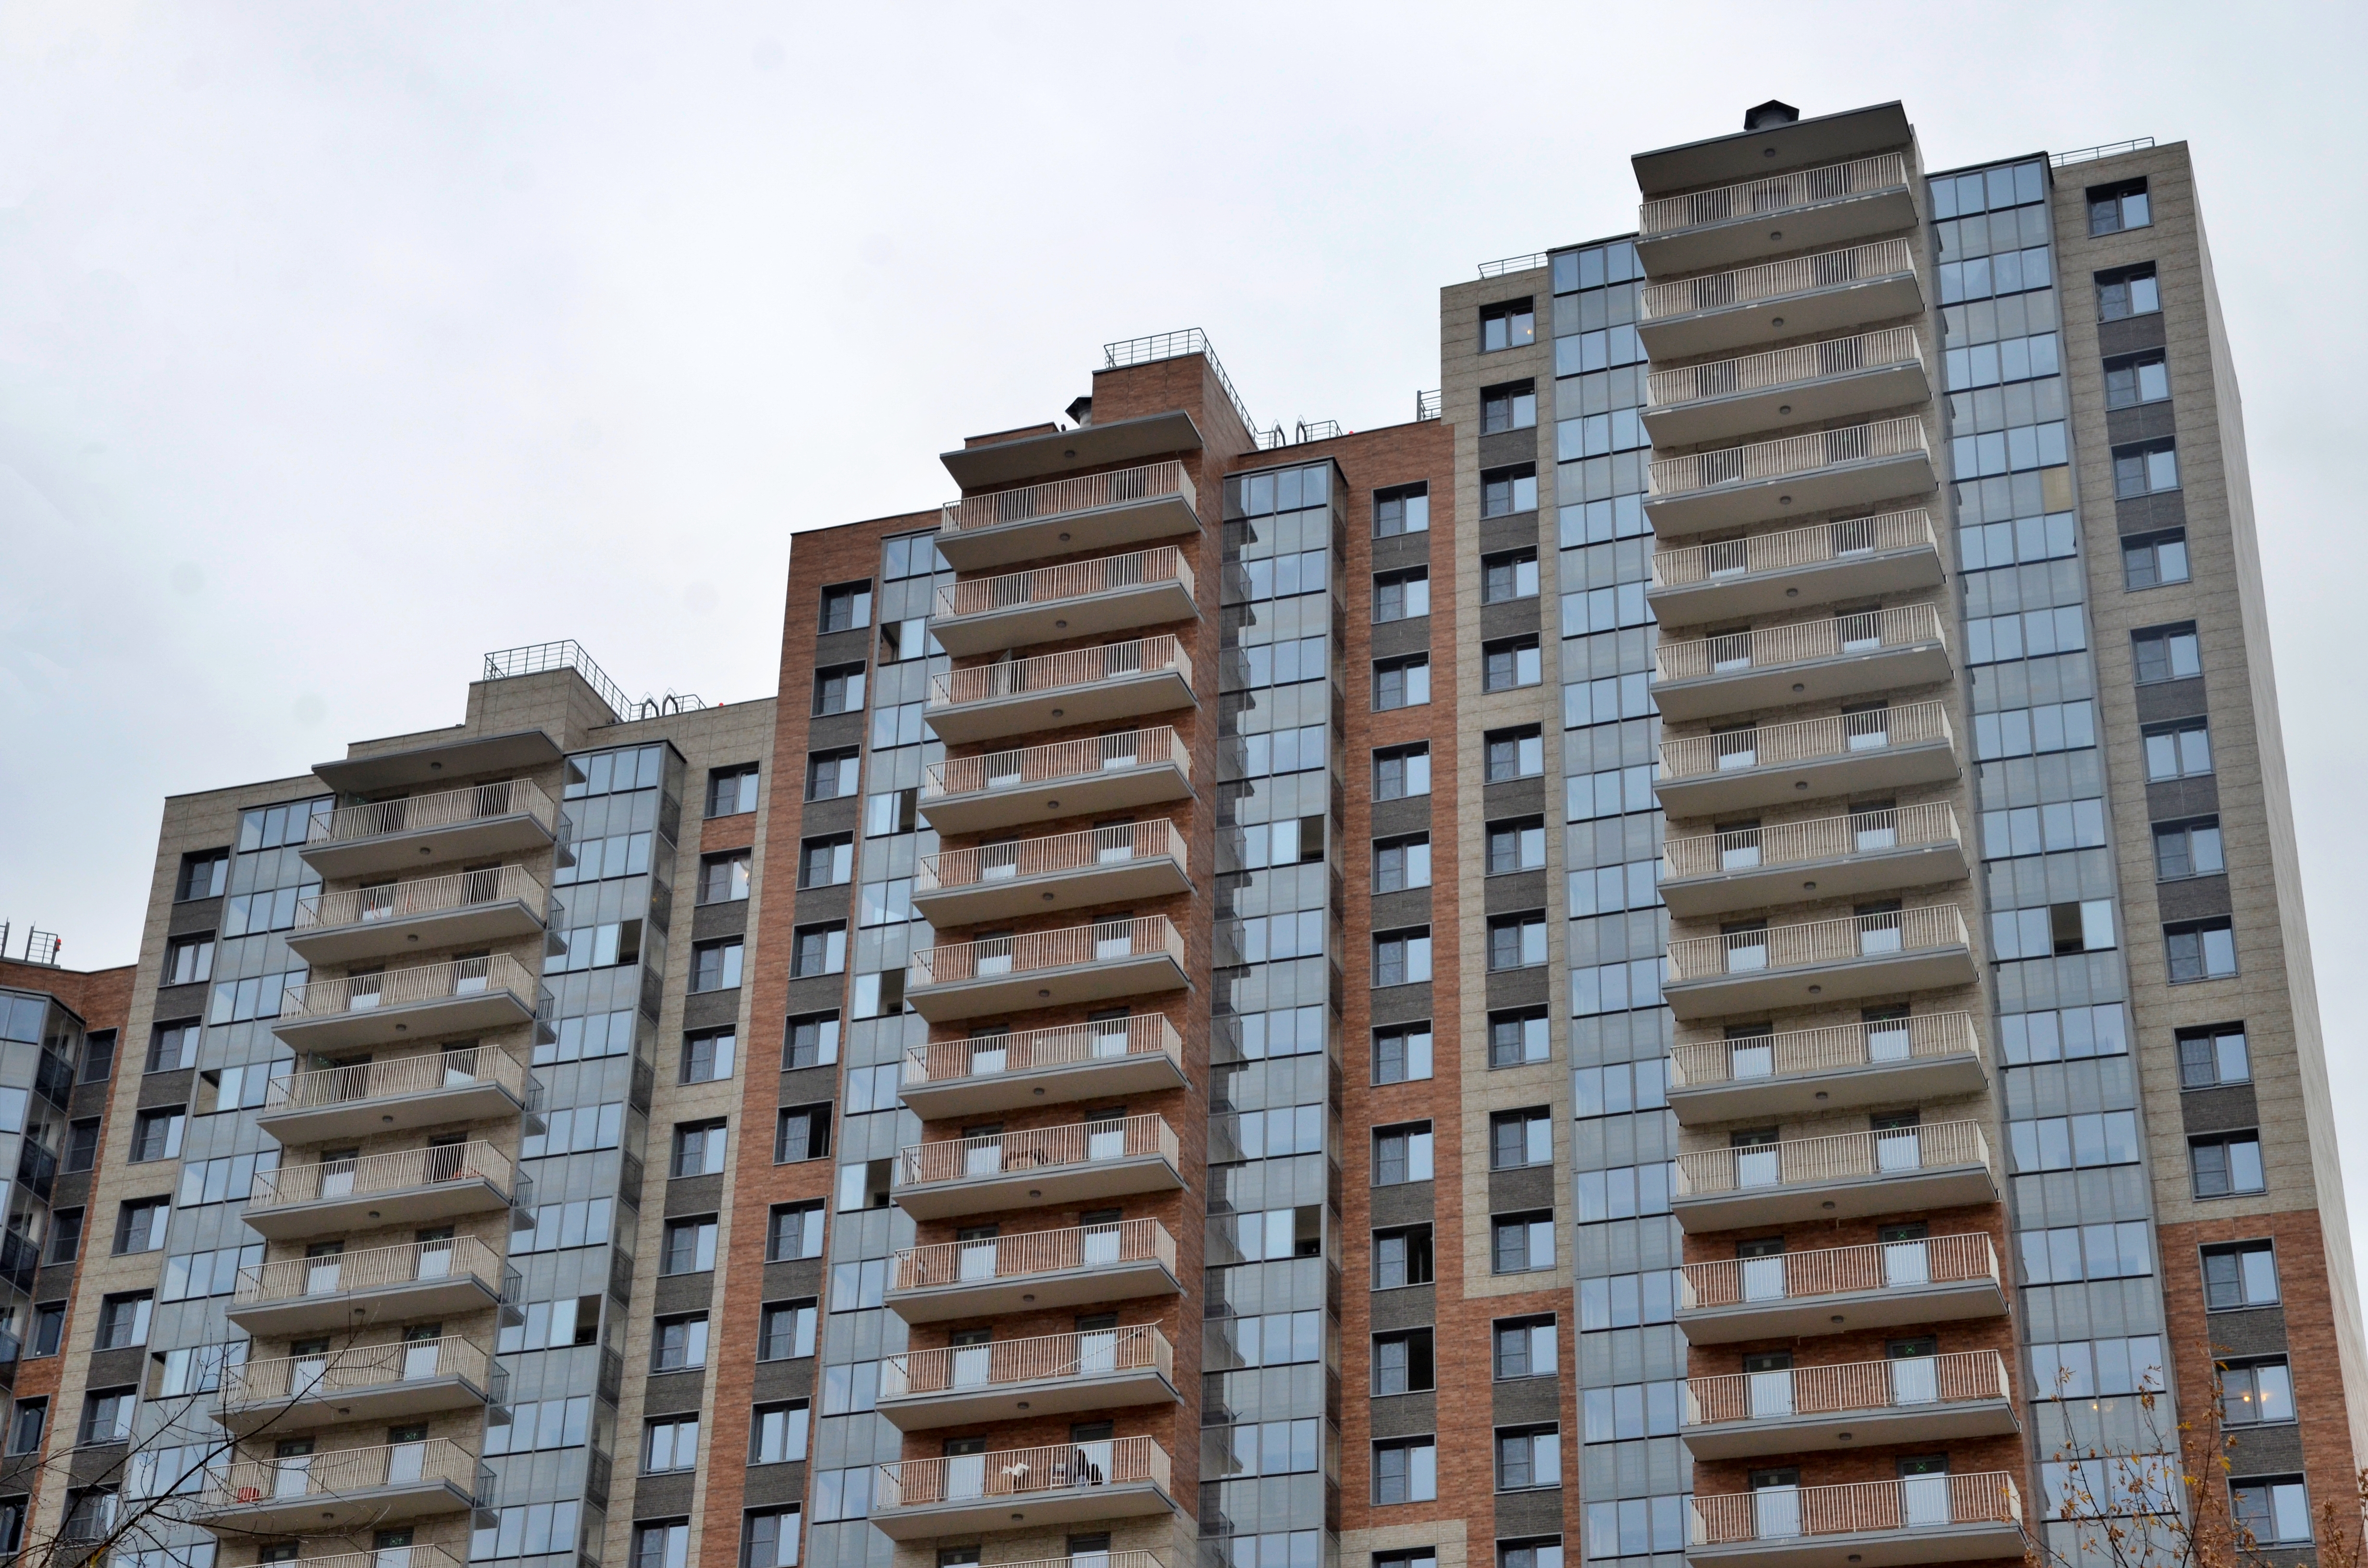 Развитие Новой Москвы: более 1,4 миллиона «квадратов» недвижимости ввели в эксплуатацию в ТиНАО за полгода